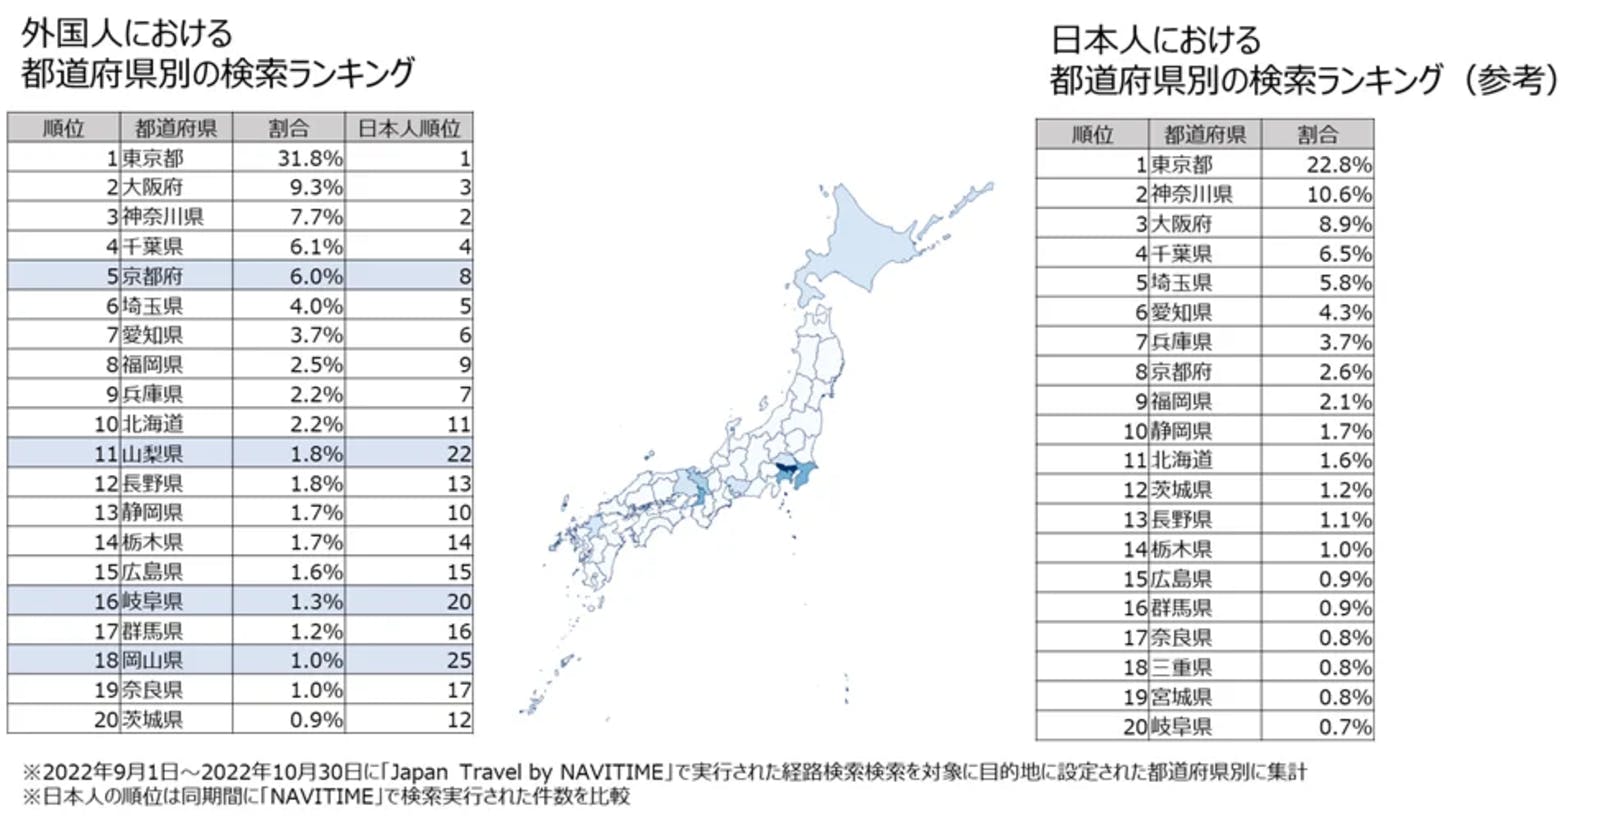 外国人による都道府県別検索ランキングのグラフ